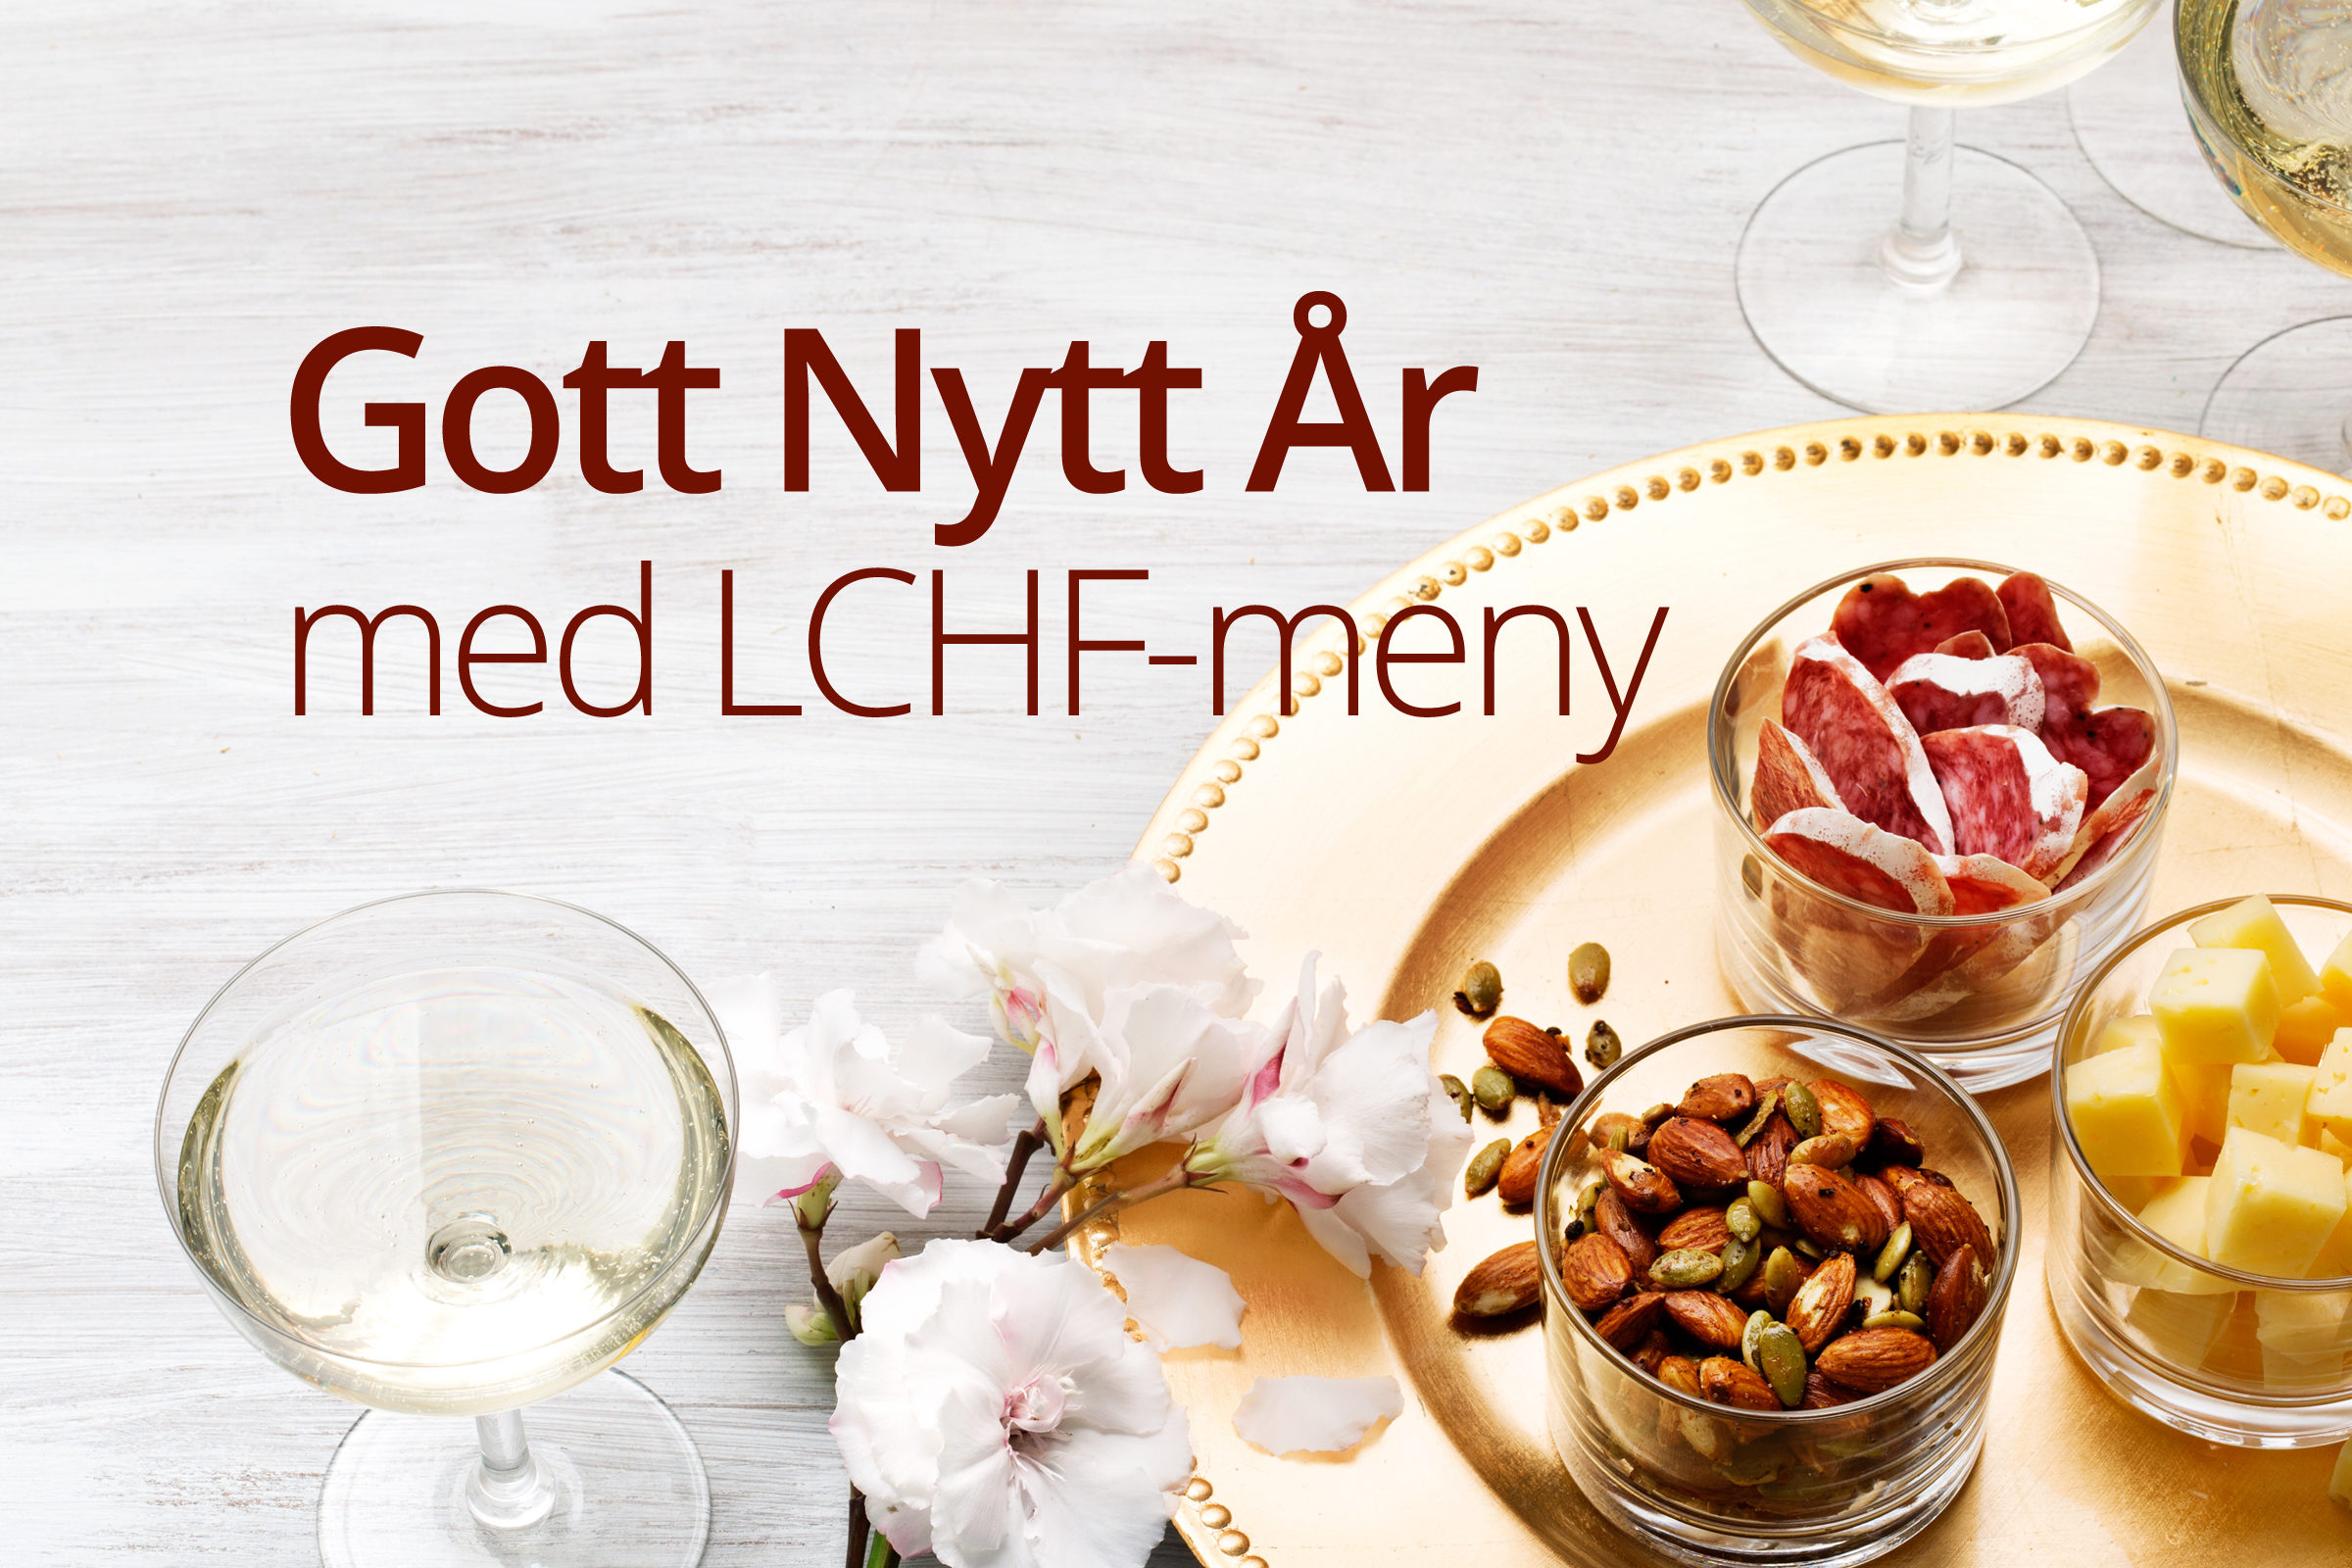 Gott Nytt År med LCHF-meny